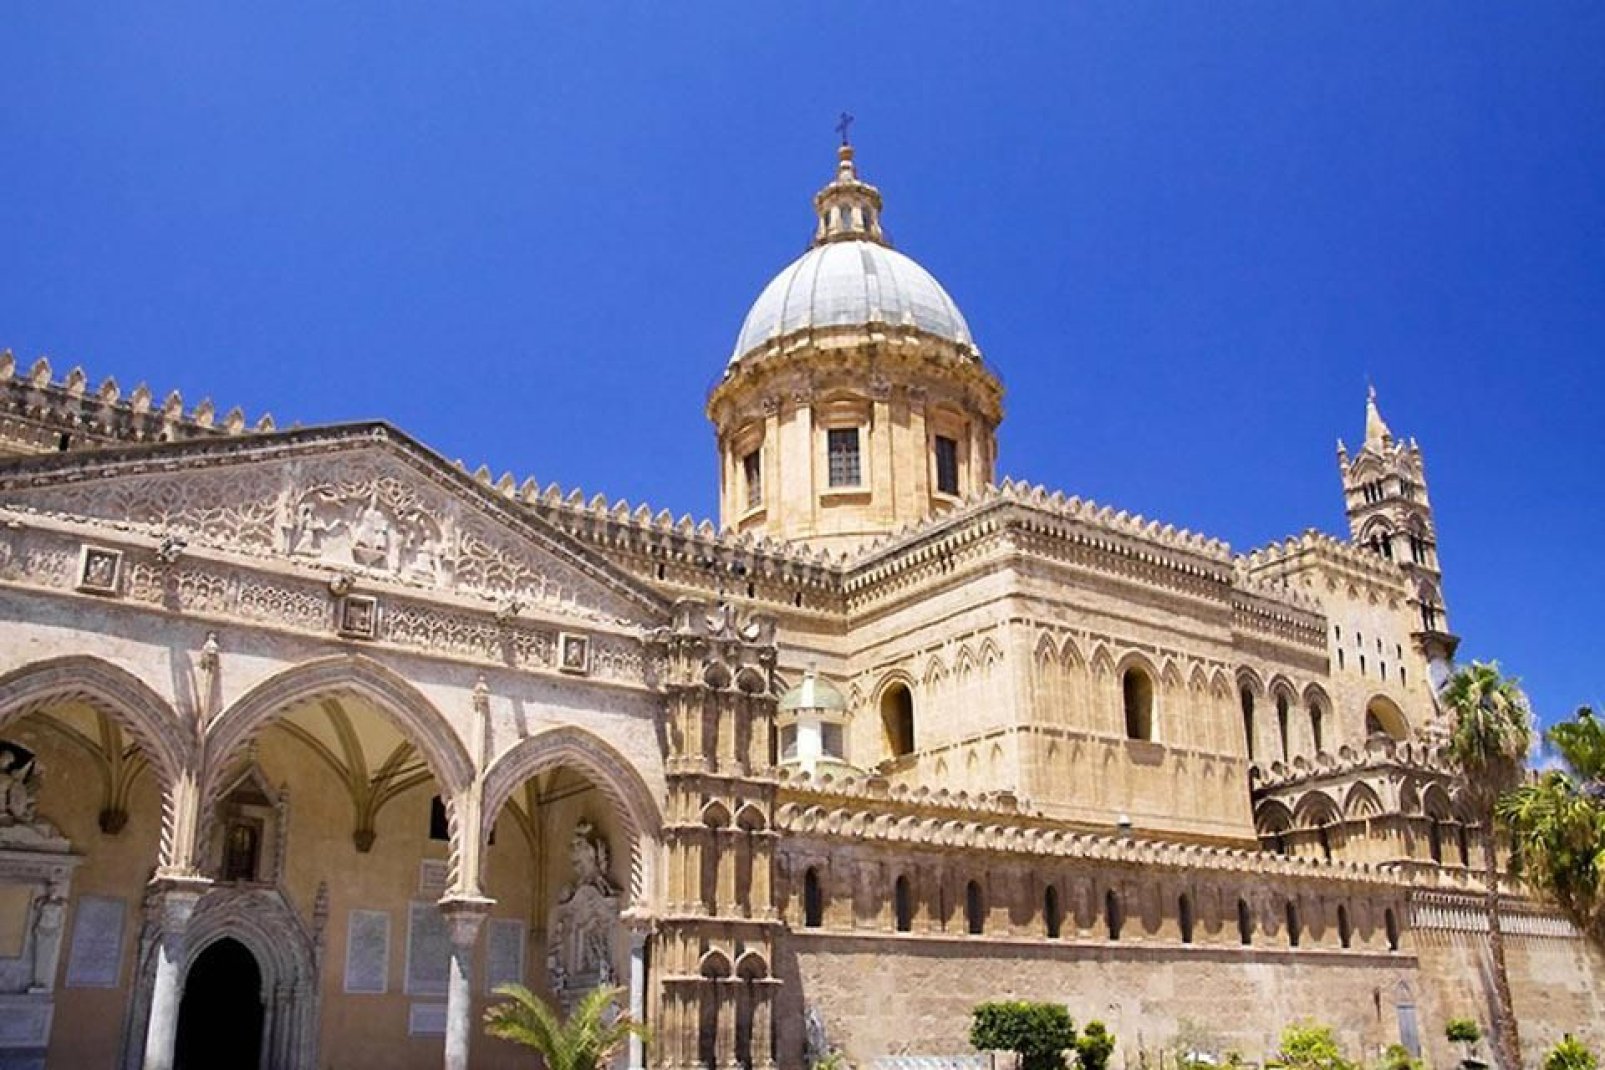 La Catedral de Palermo, dedicada a Nuestra Señora de la Asunción, es un complejo arquitectónico grandioso que reúne varios estilos.